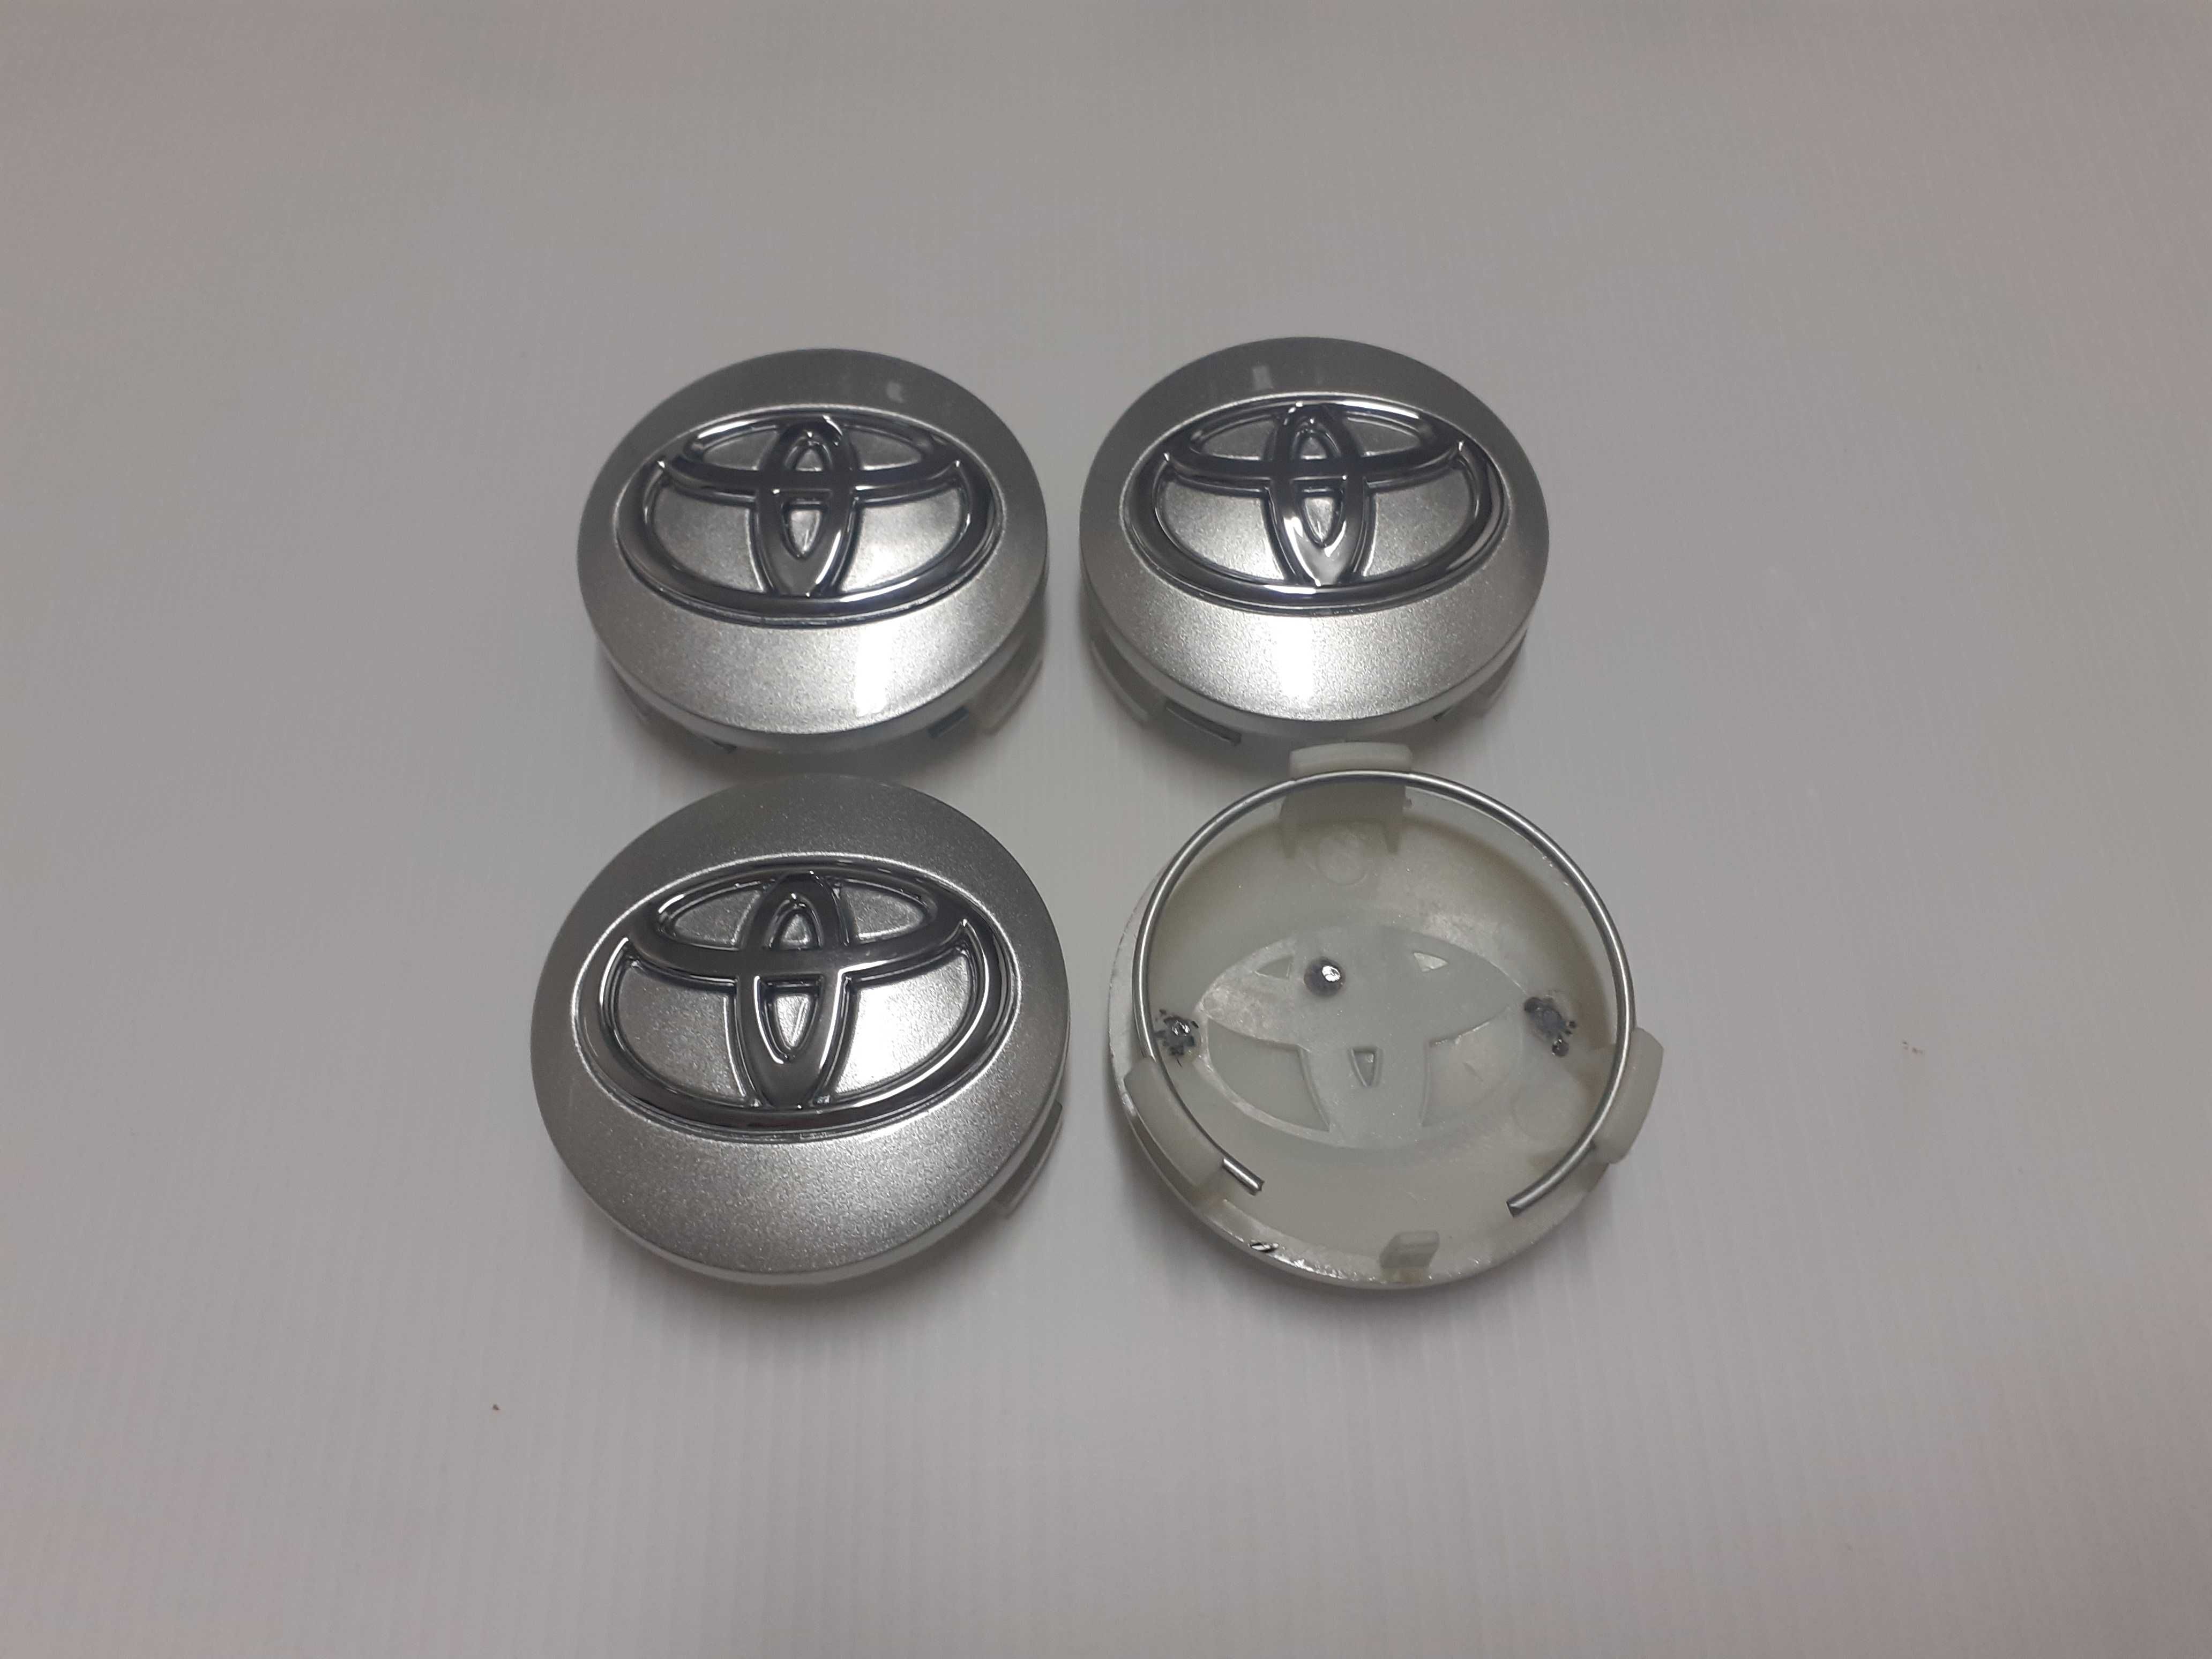 Centros/tampas de jante completos Toyota com 57, 60, 62, 65 e 68 mm